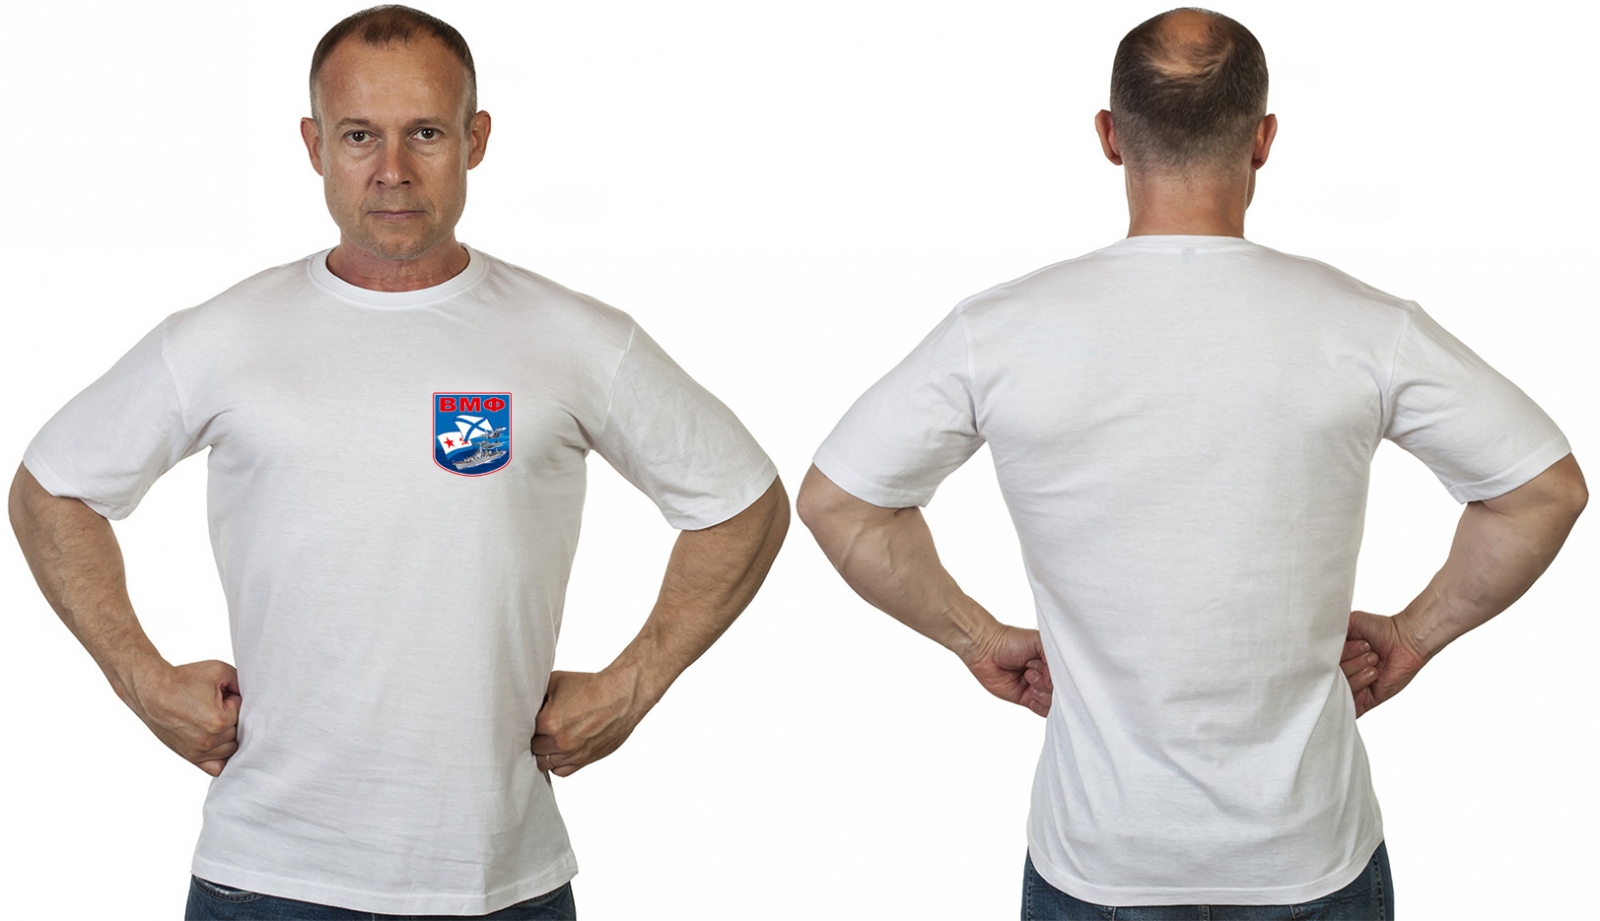 Васильковая футболка с термотрансфером "ВМФ" 